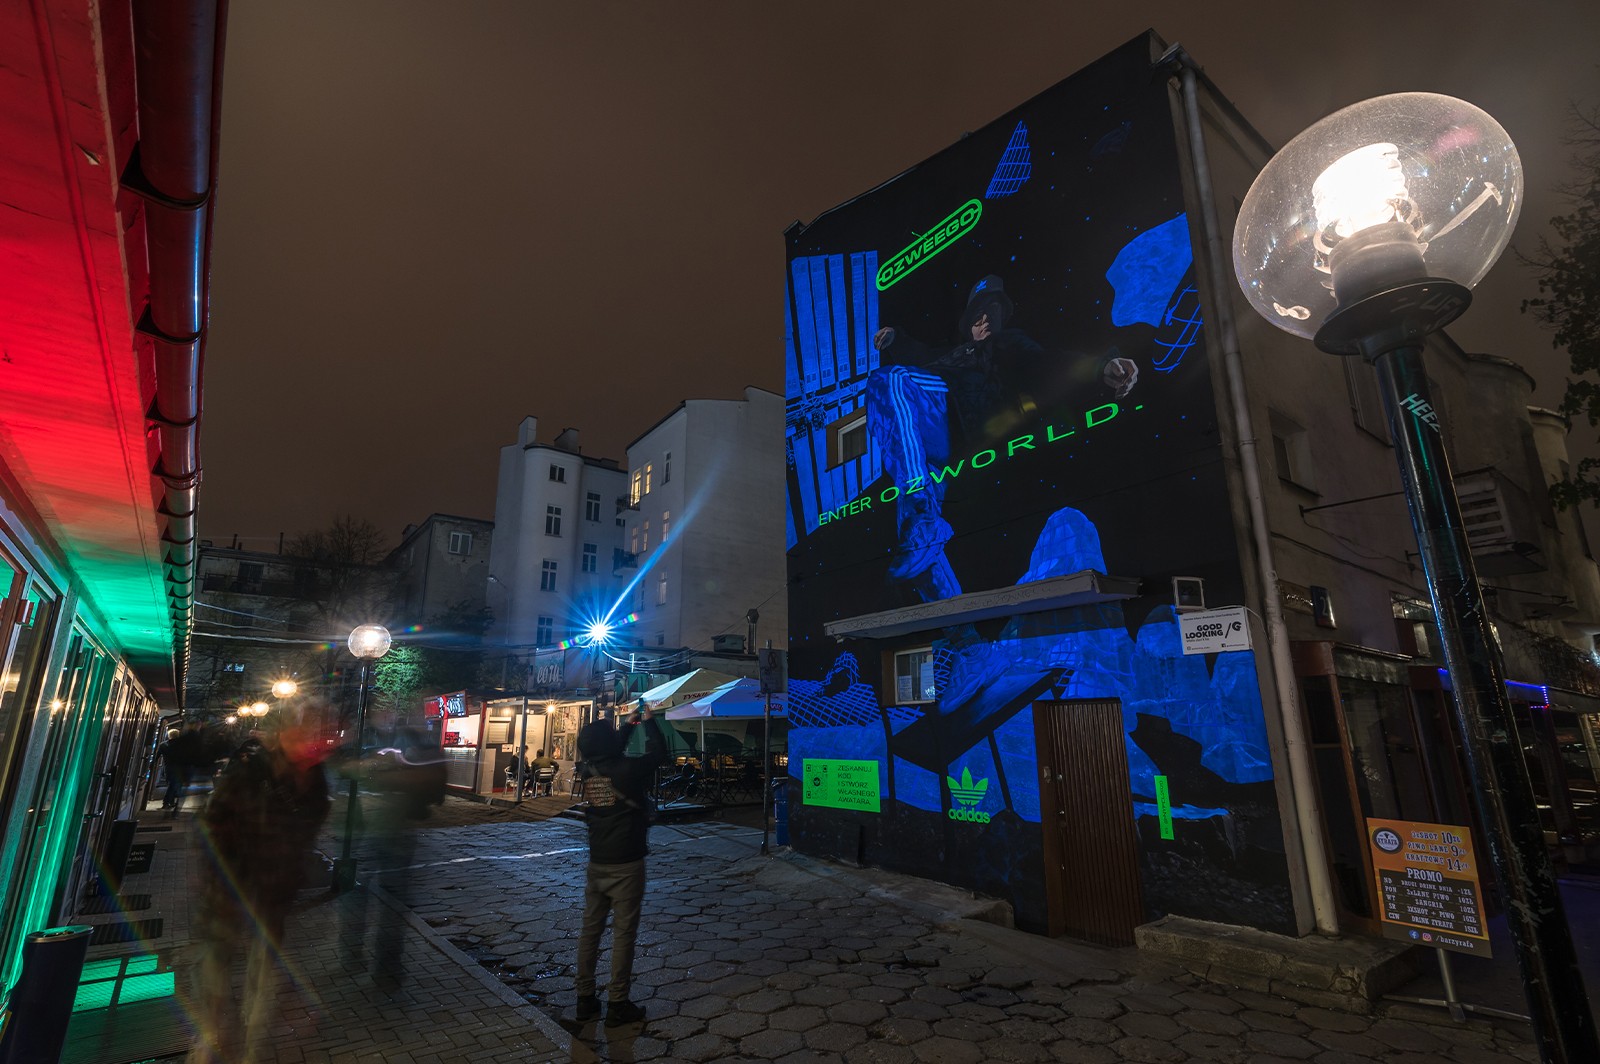 Artystyczny mural z wykorzystaniem farb fluo i UV w Warszawie | Enter OZWORLD | Portfolio